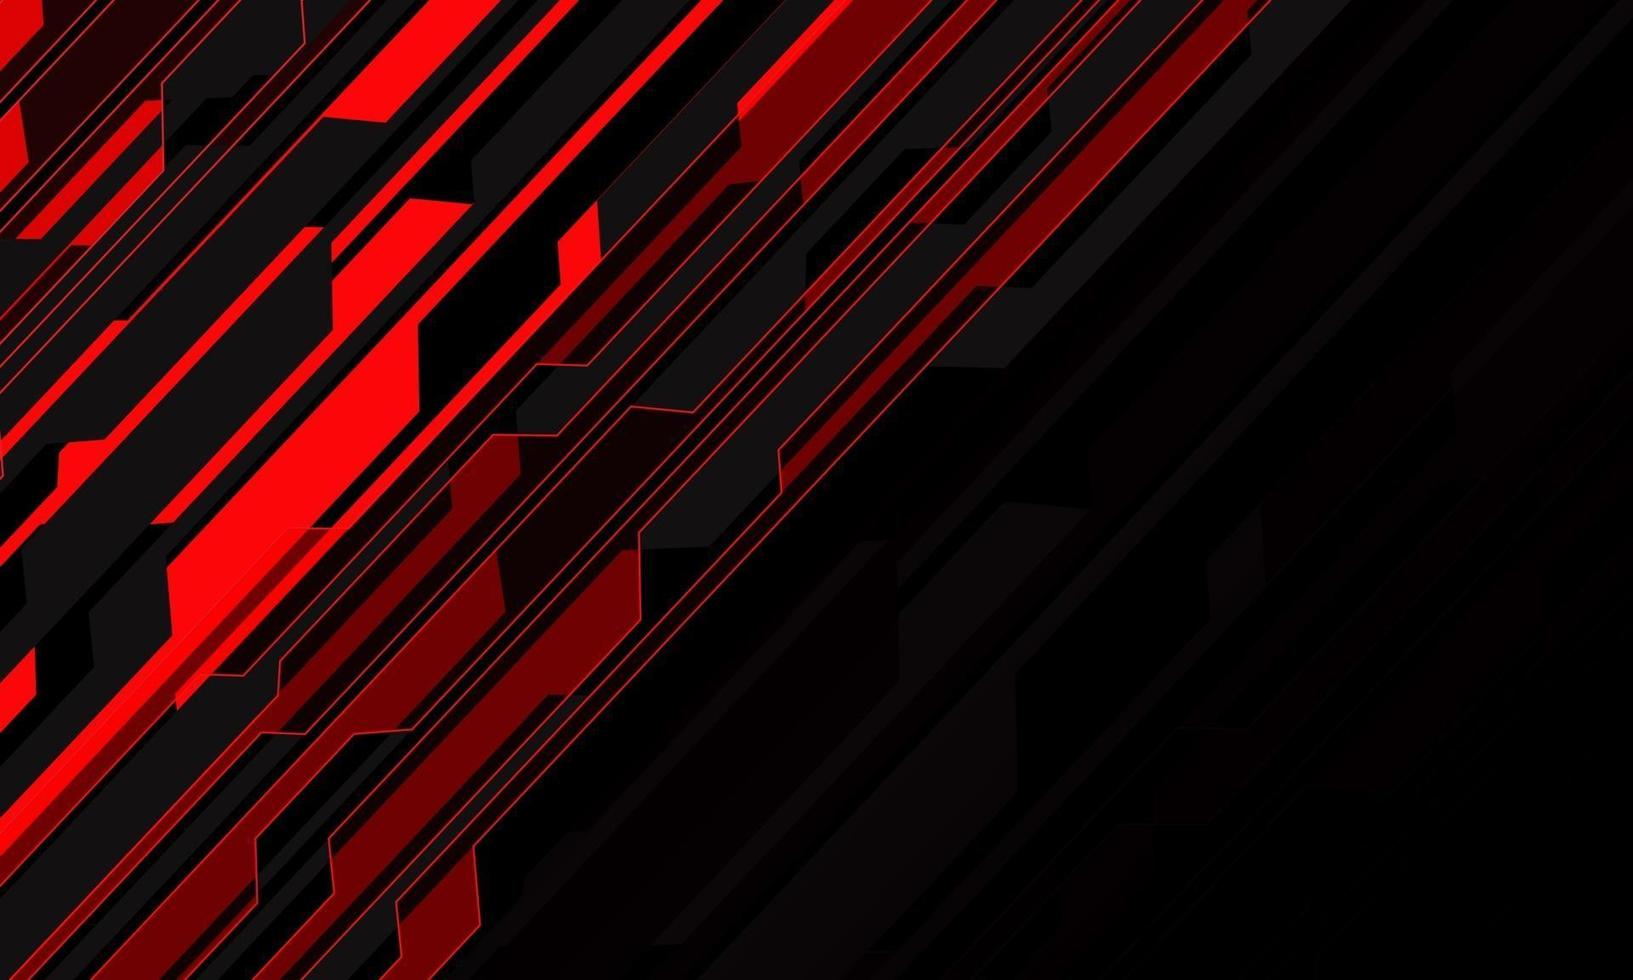 taglio cyber astratto del circuito della luce rossa sull'illustrazione futuristica moderna di vettore del fondo di tecnologia di progettazione dello spazio vuoto nero